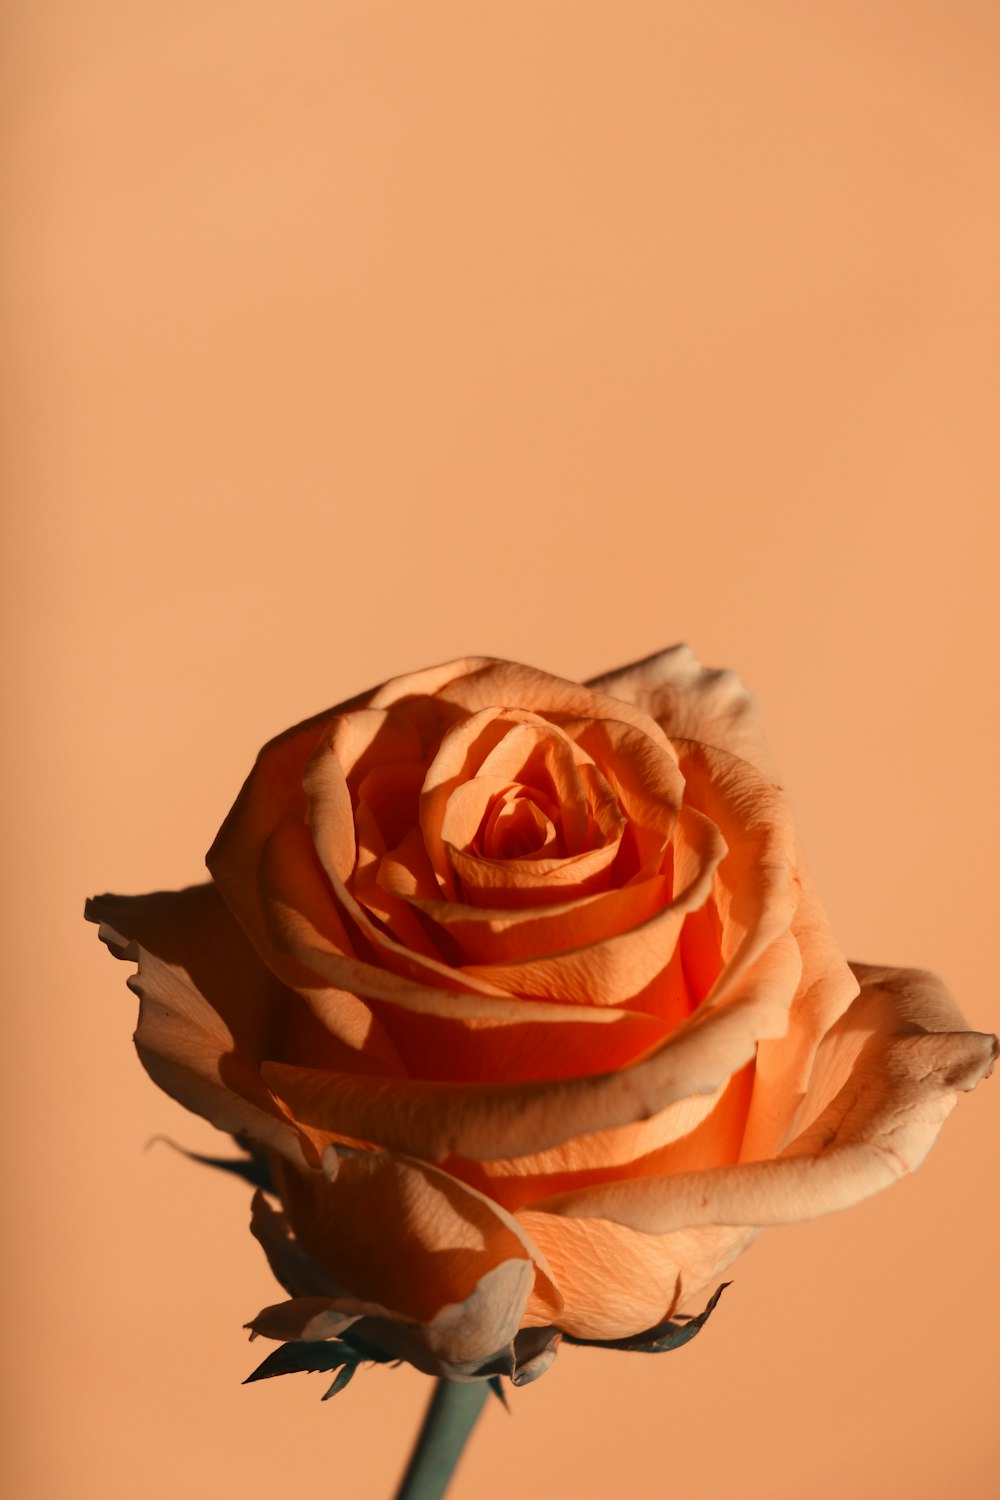 Cùng đắm chìm trong màu sắc tươi tắn và sức sống vô tận của loài hoa hồng cam, với hình ảnh hoa hồng cam miễn phí đẹp lung linh. Thưởng thức bức hình này, bạn sẽ được nhìn thấy tình yêu và sự kiên trì của hoa hồng cam đối với cuộc sống và thiên nhiên.